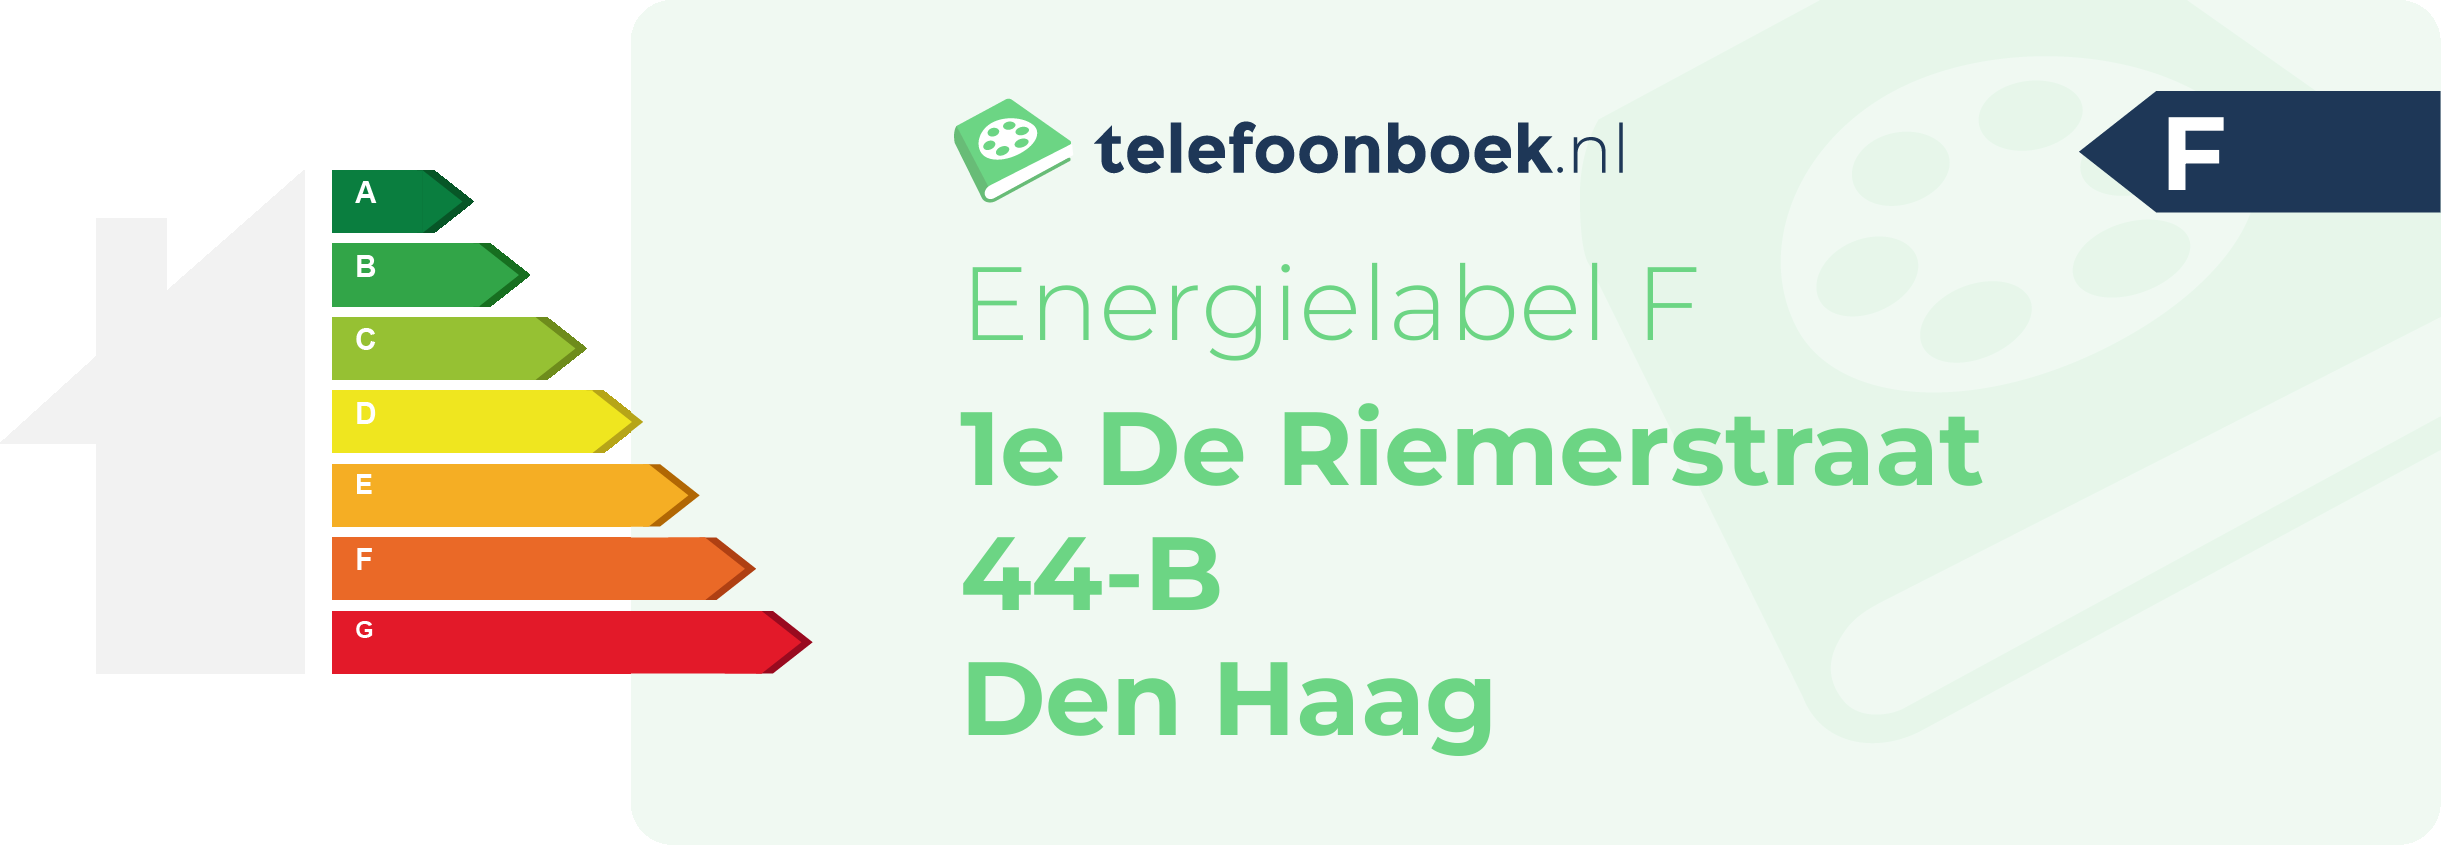 Energielabel 1e De Riemerstraat 44-B Den Haag